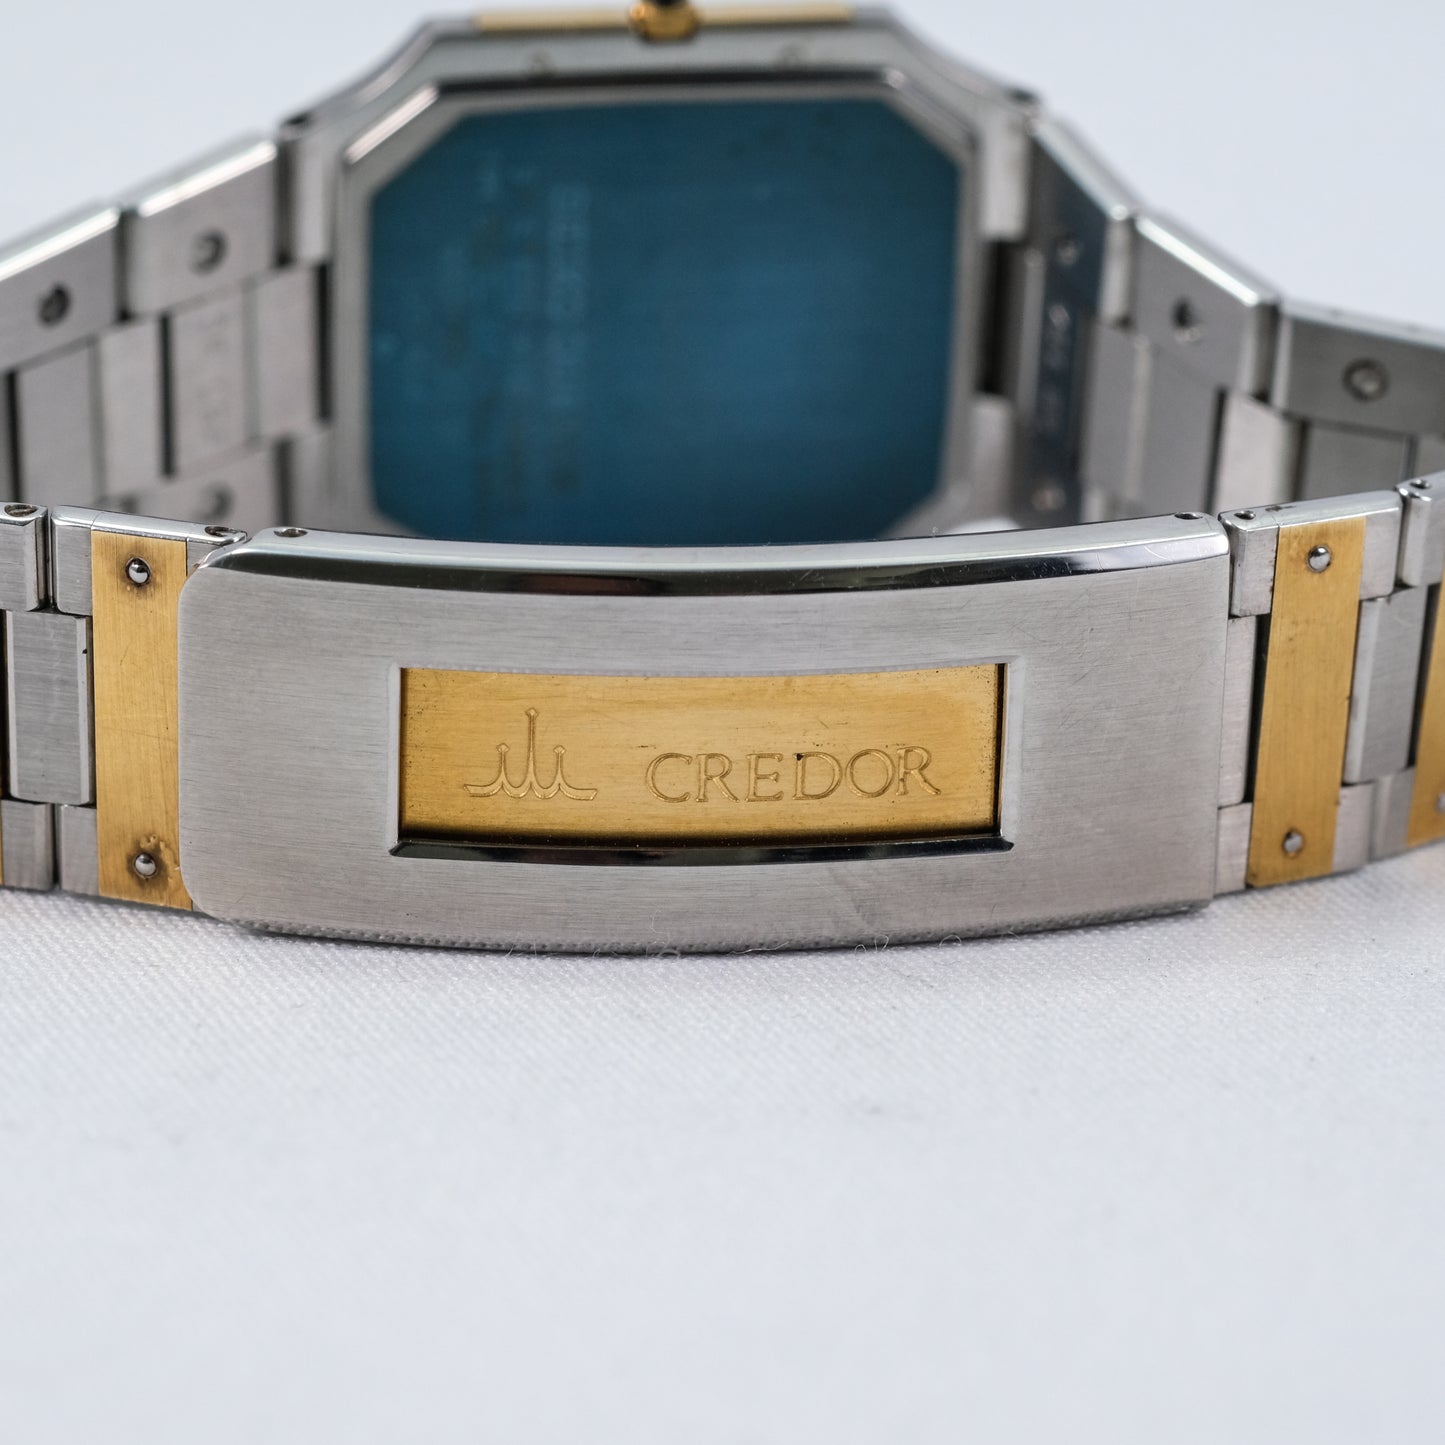 1982 Credor Seiko 9300-5320